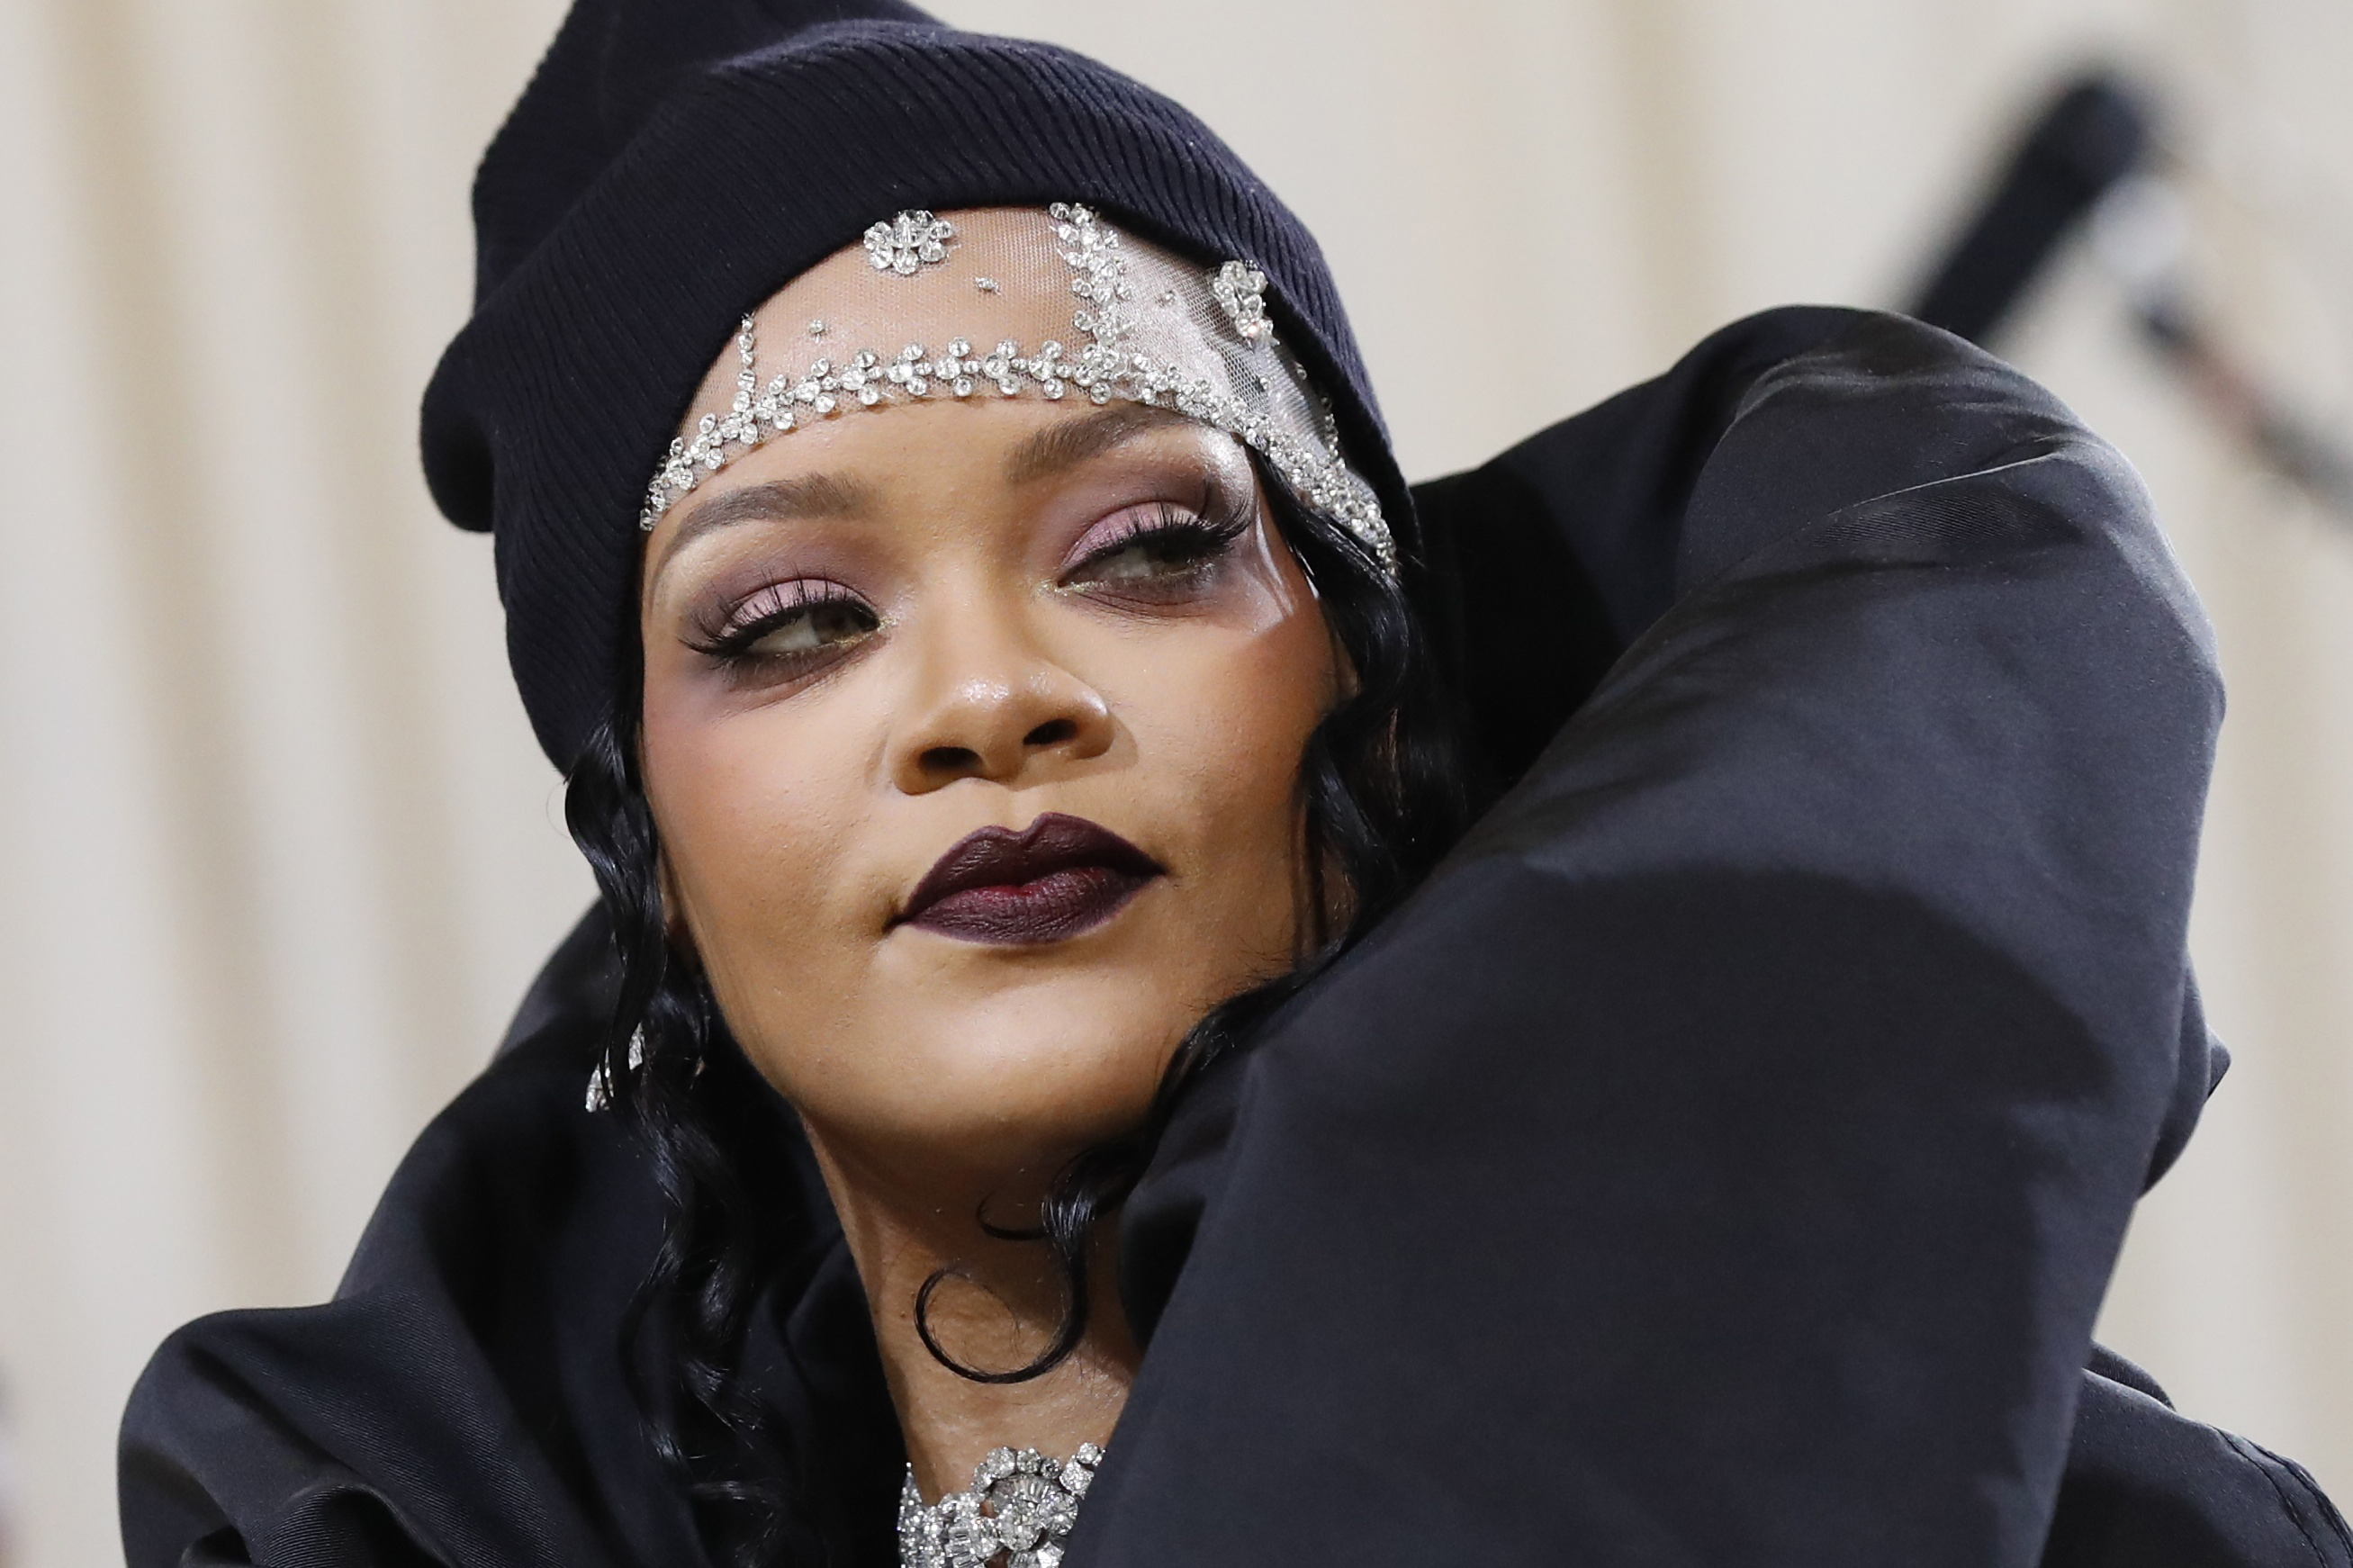 Rihanna estuvo al borde de la quiebra por gastar demasiado y demandó a su asesor financiero. El contador respondió: “¿De verdad hacía falta explicarle que, si gastás dinero para comprar cosas, al final vas a tener las cosas pero no el dinero?” REUTERS/Mario Anzuoni